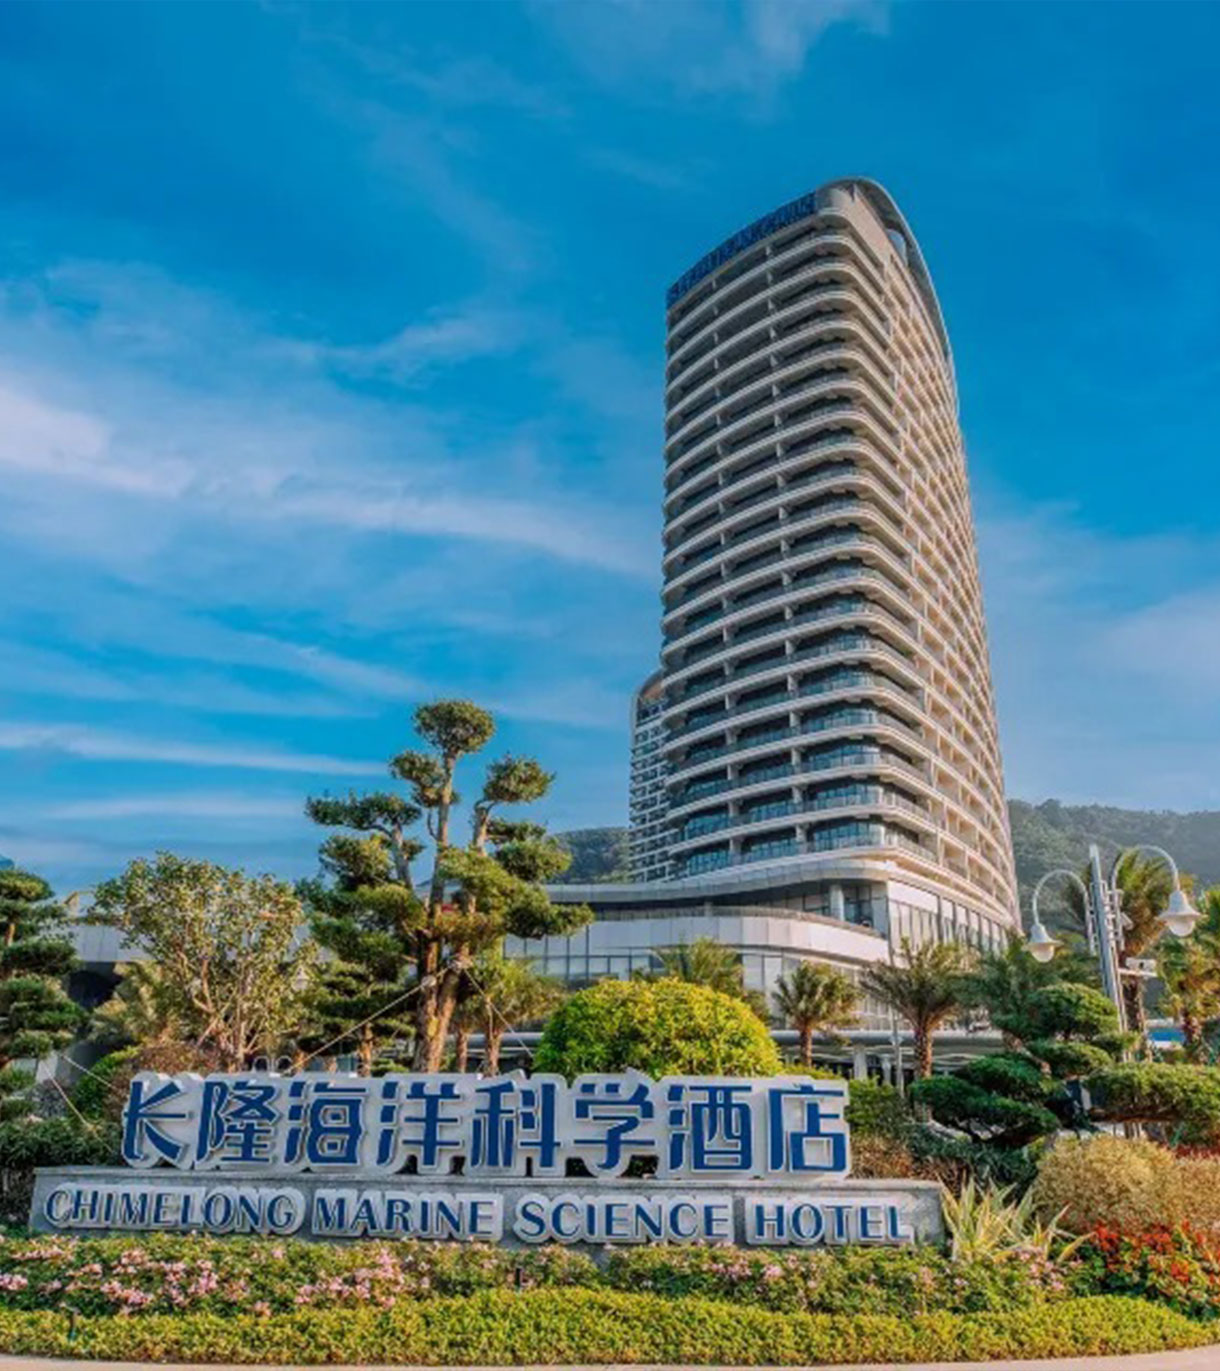 【珠海長隆海洋科學酒店】消息指預計 7 月11 日重新開幕營業